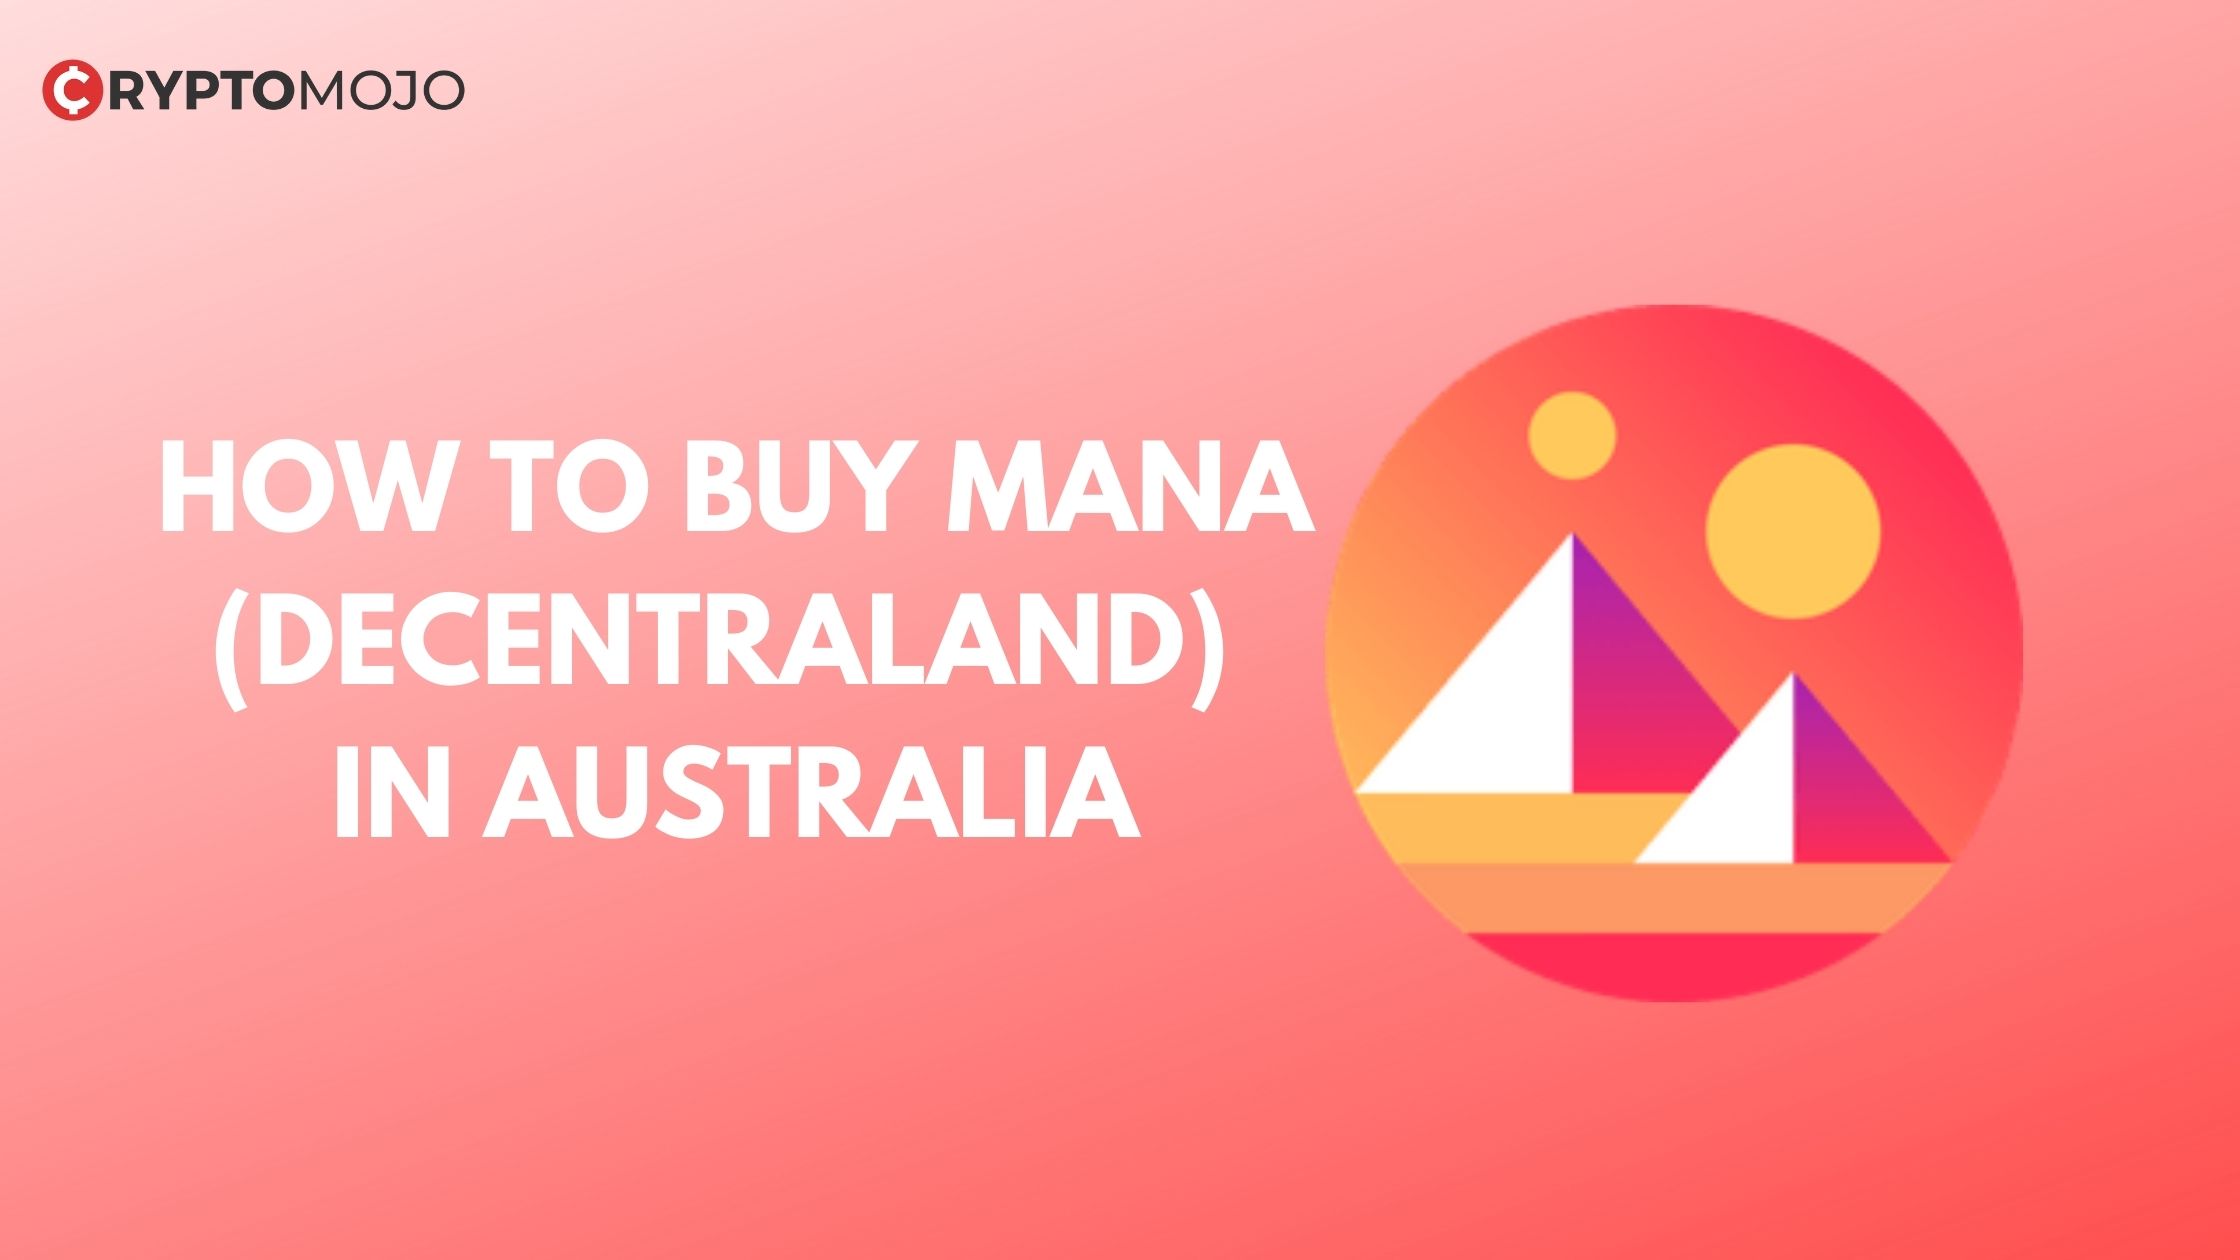 BUY MANA (DECENTRALAND) IN AUSTRALIA